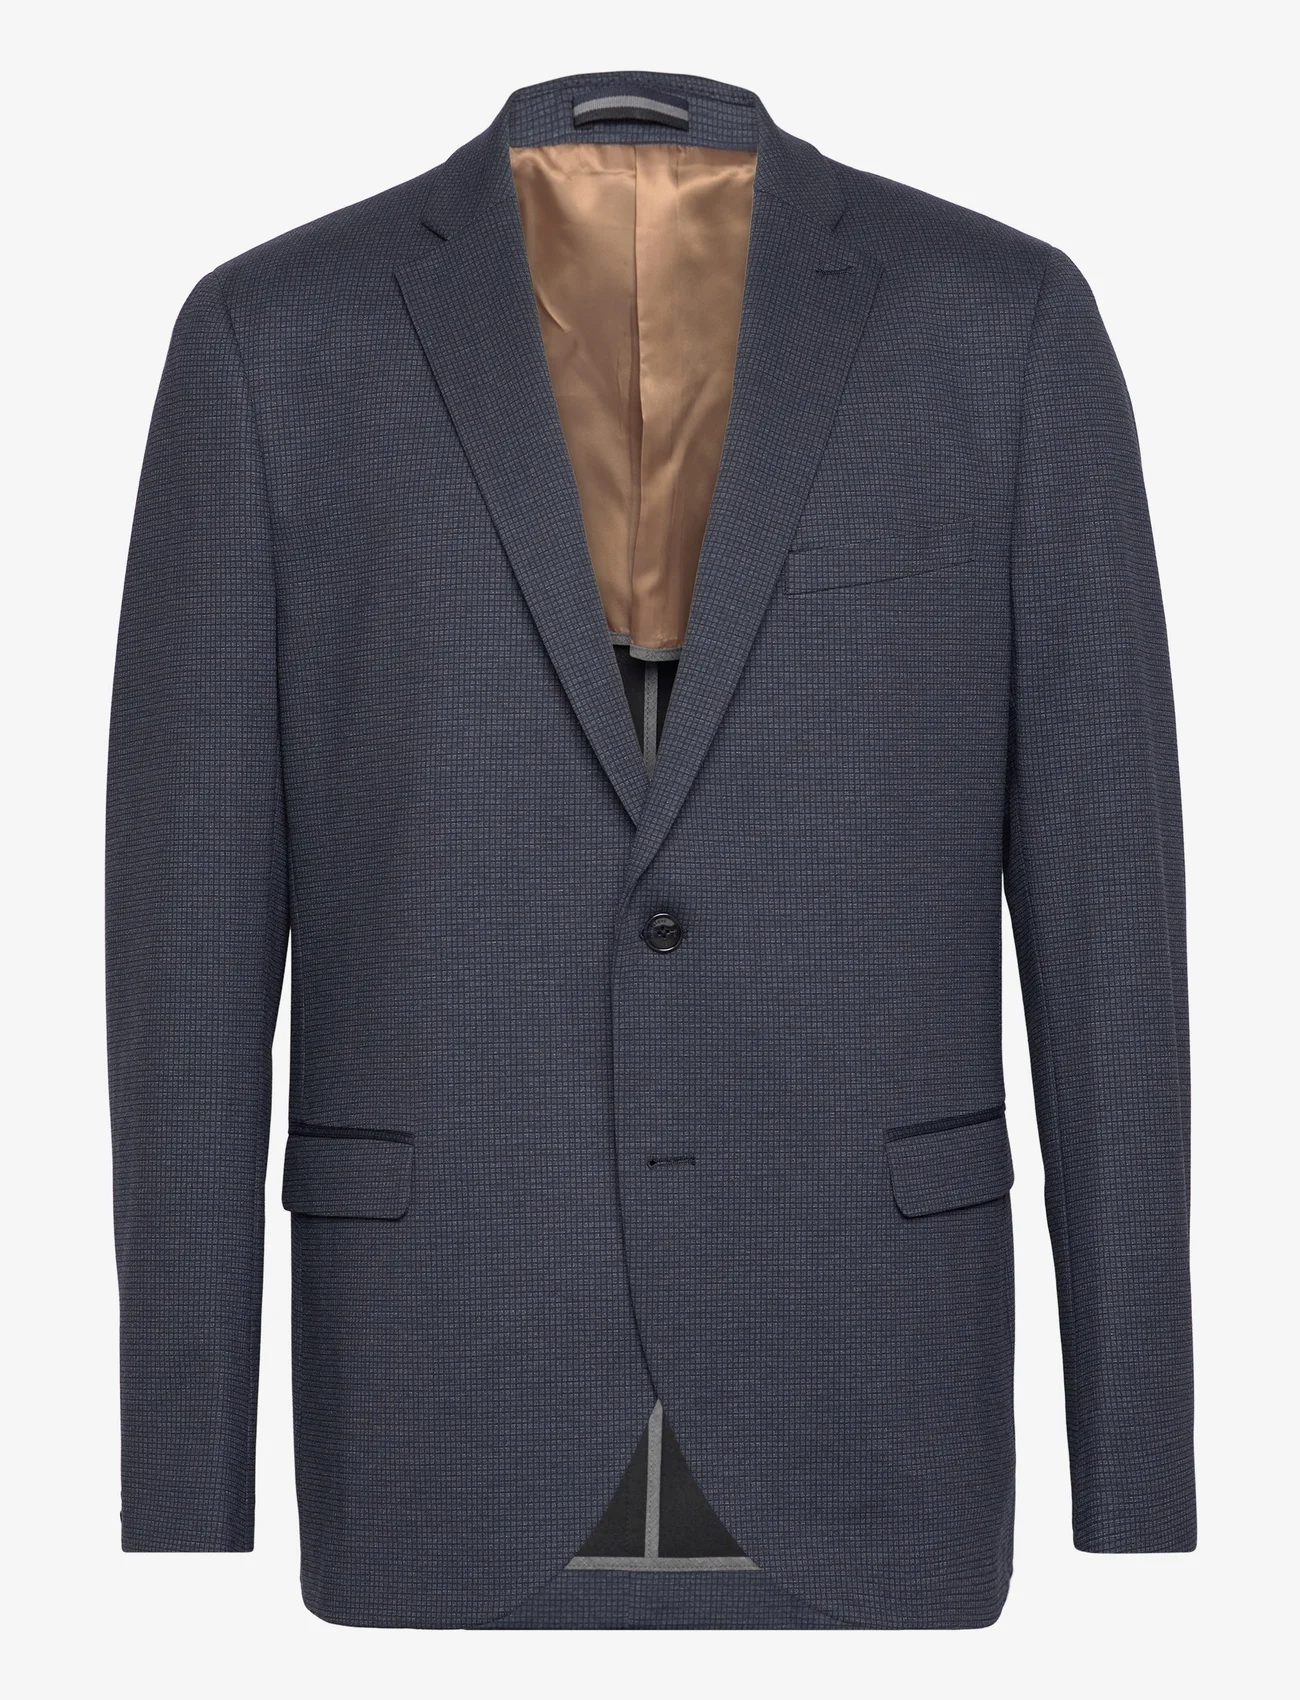 Matinique - MAgeorge Jersey - blazers met dubbele knopen - dark navy - 0